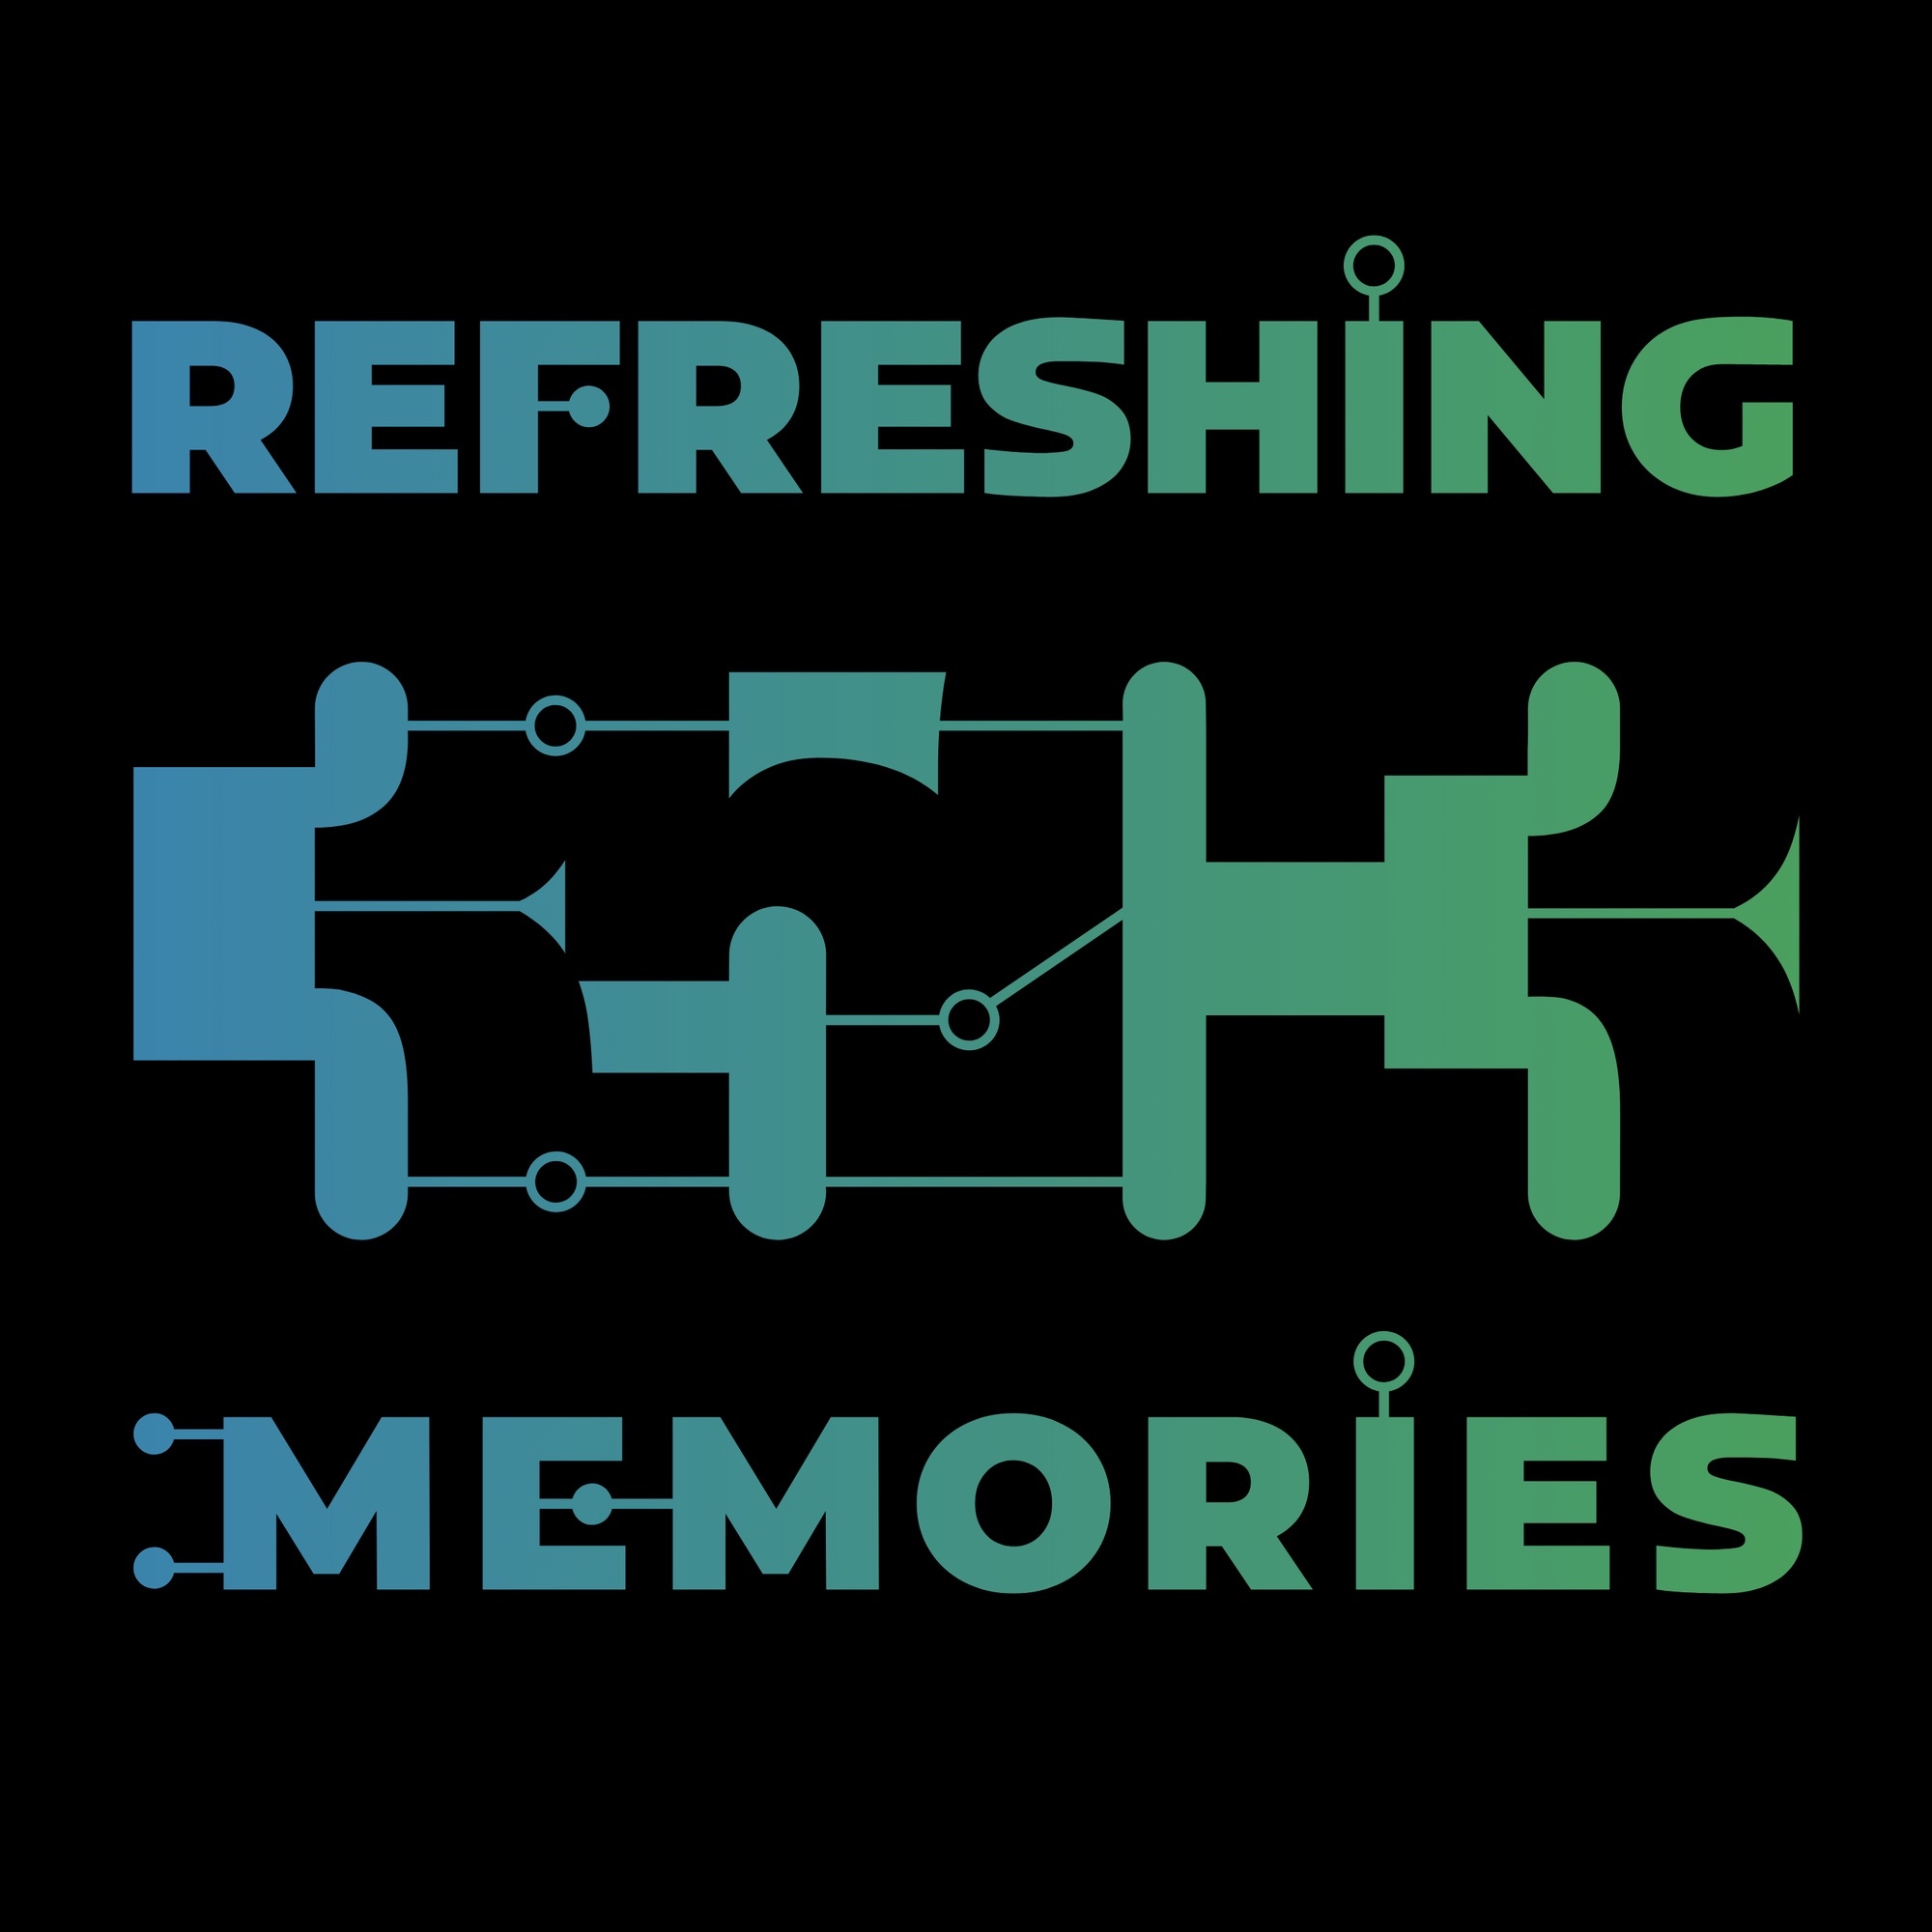 Logo: «REFRESHING MEMORIES« (35C3)